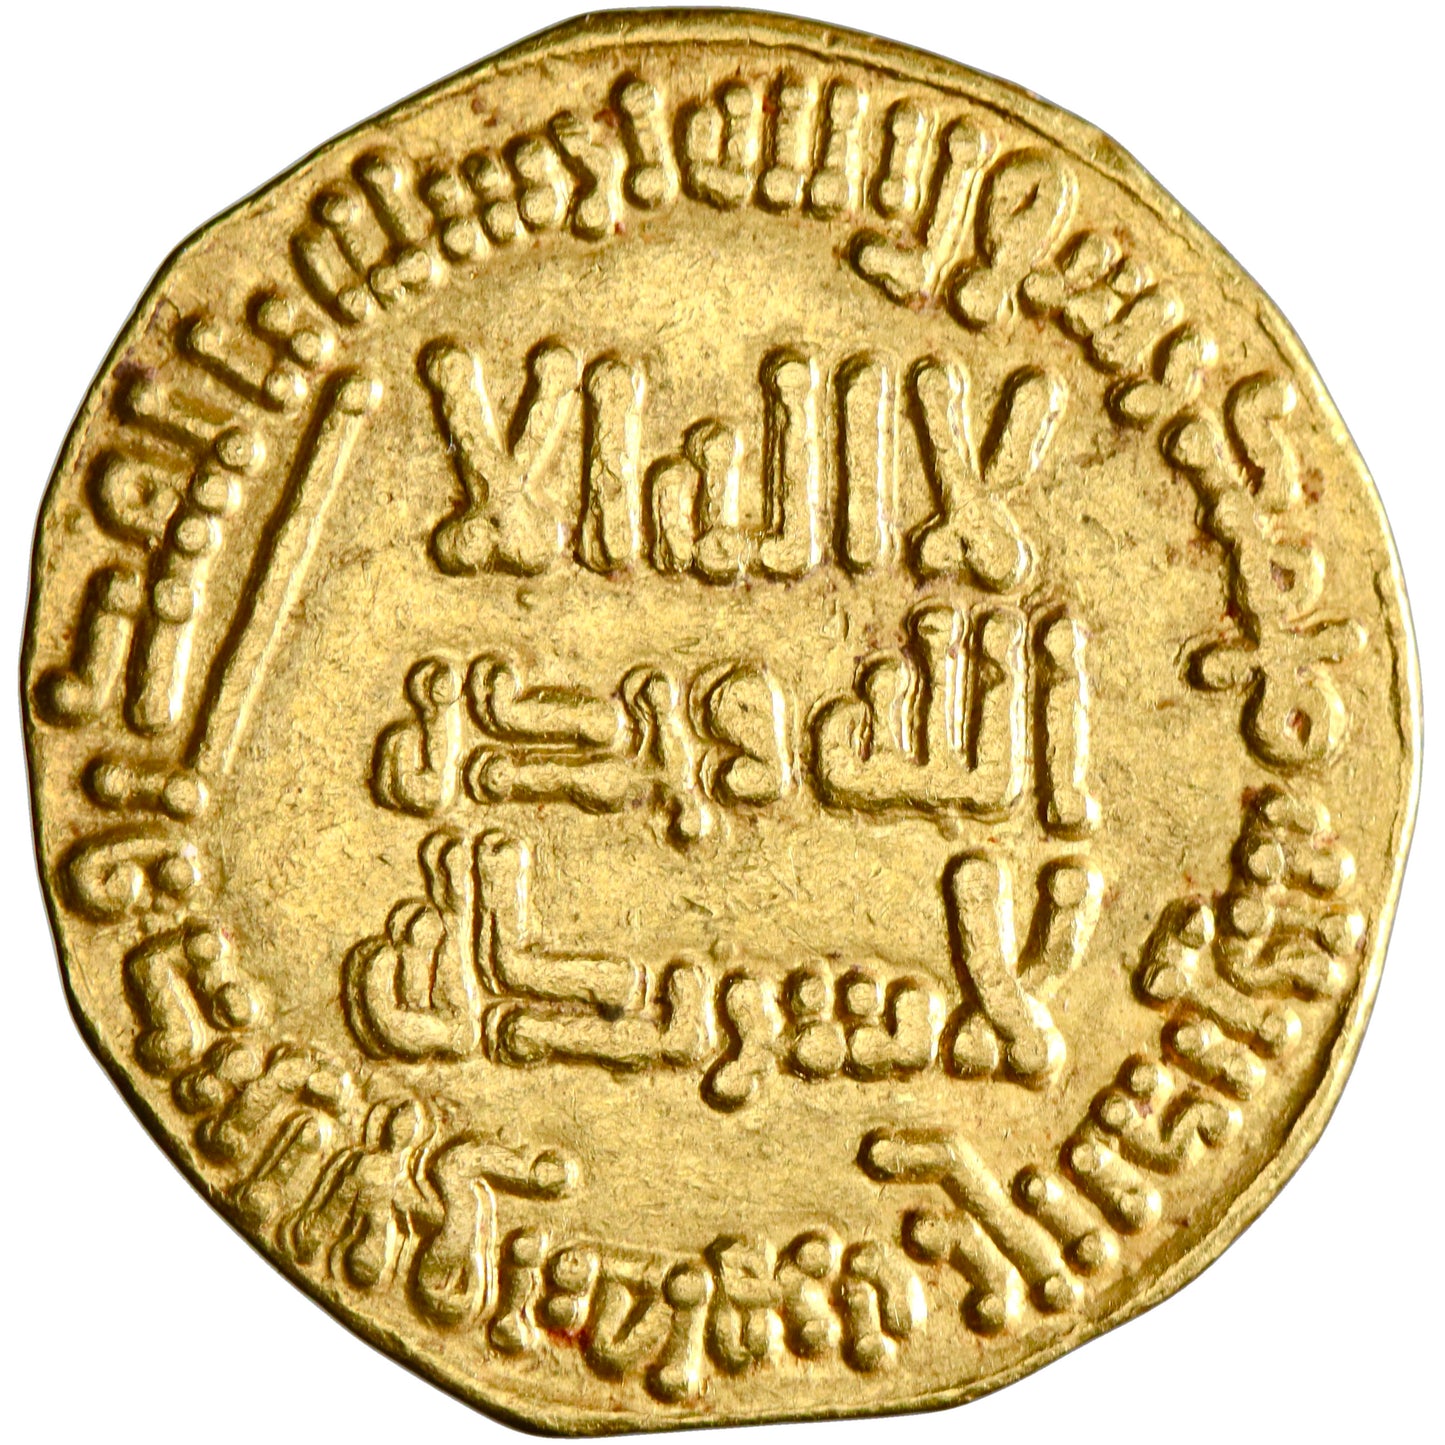 Abbasid, Al-Saffah, gold dinar, AH 132, first Abbasid coin